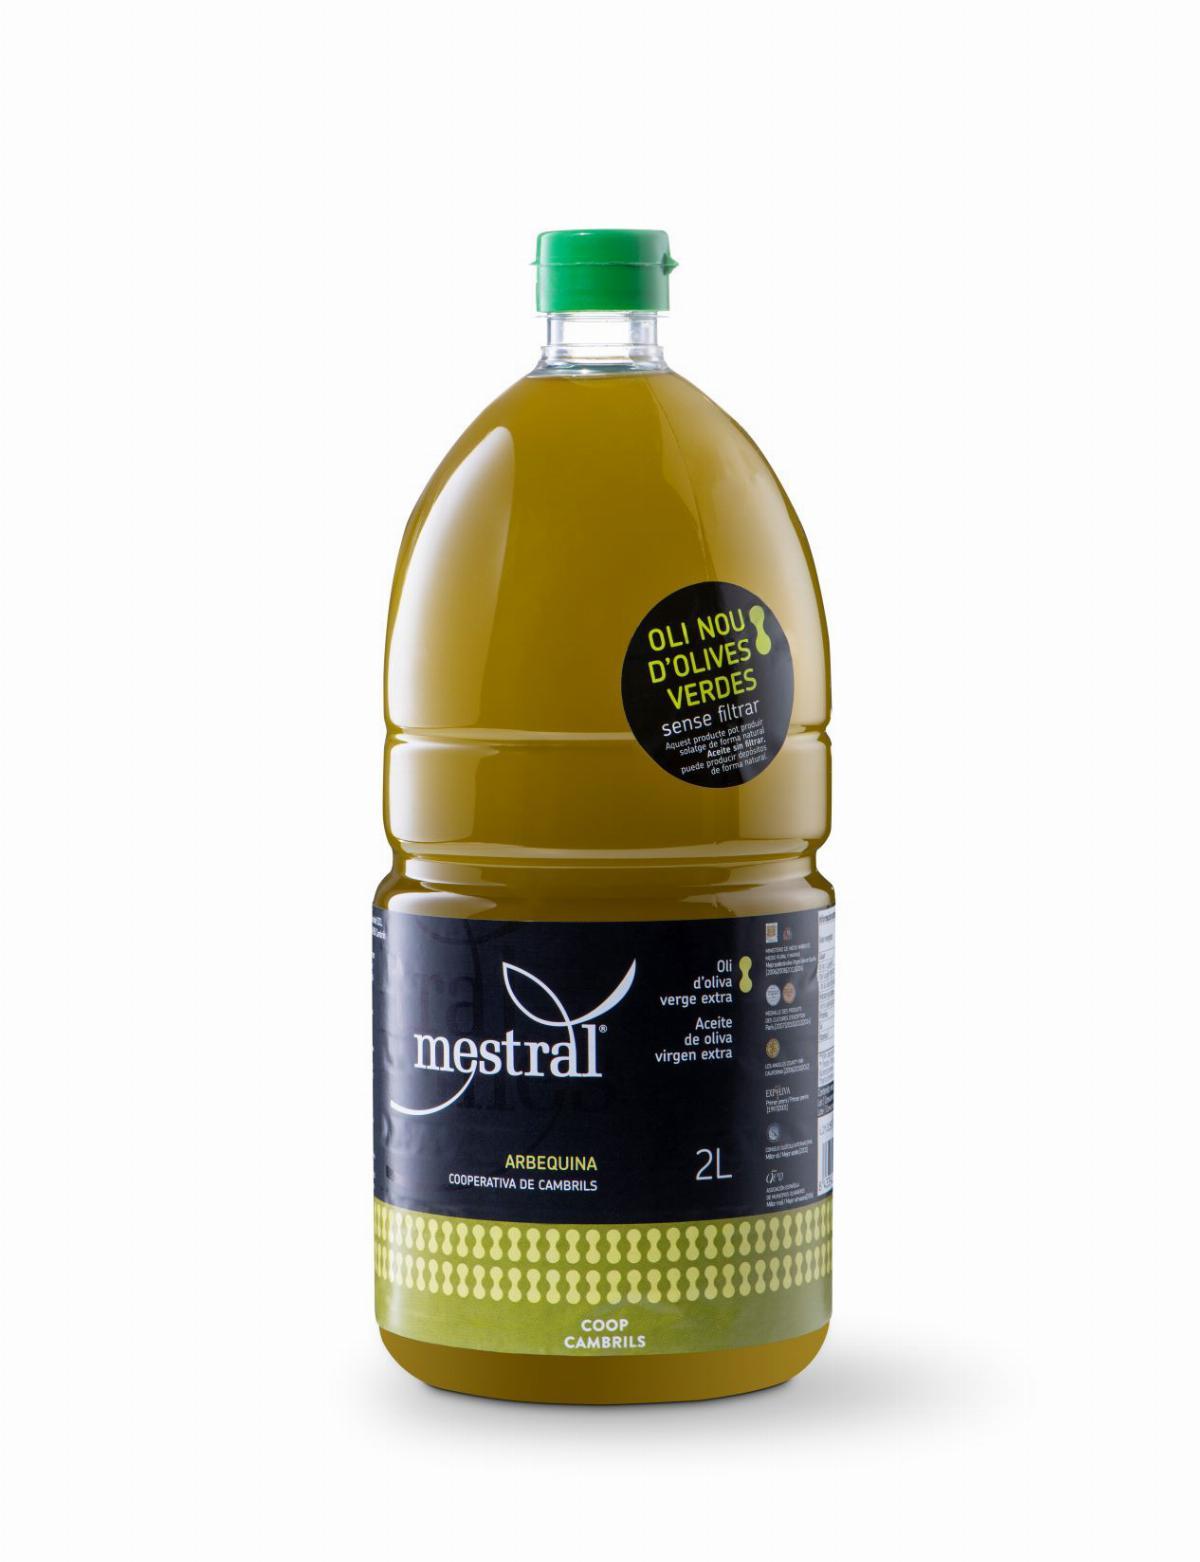 Olive Oil & Seasonings - CAIXA Oli d'Oliva Verge Extra Mestral sense filtrar, plàstic 2 litres, CAT-ES - Mestral Cambrils